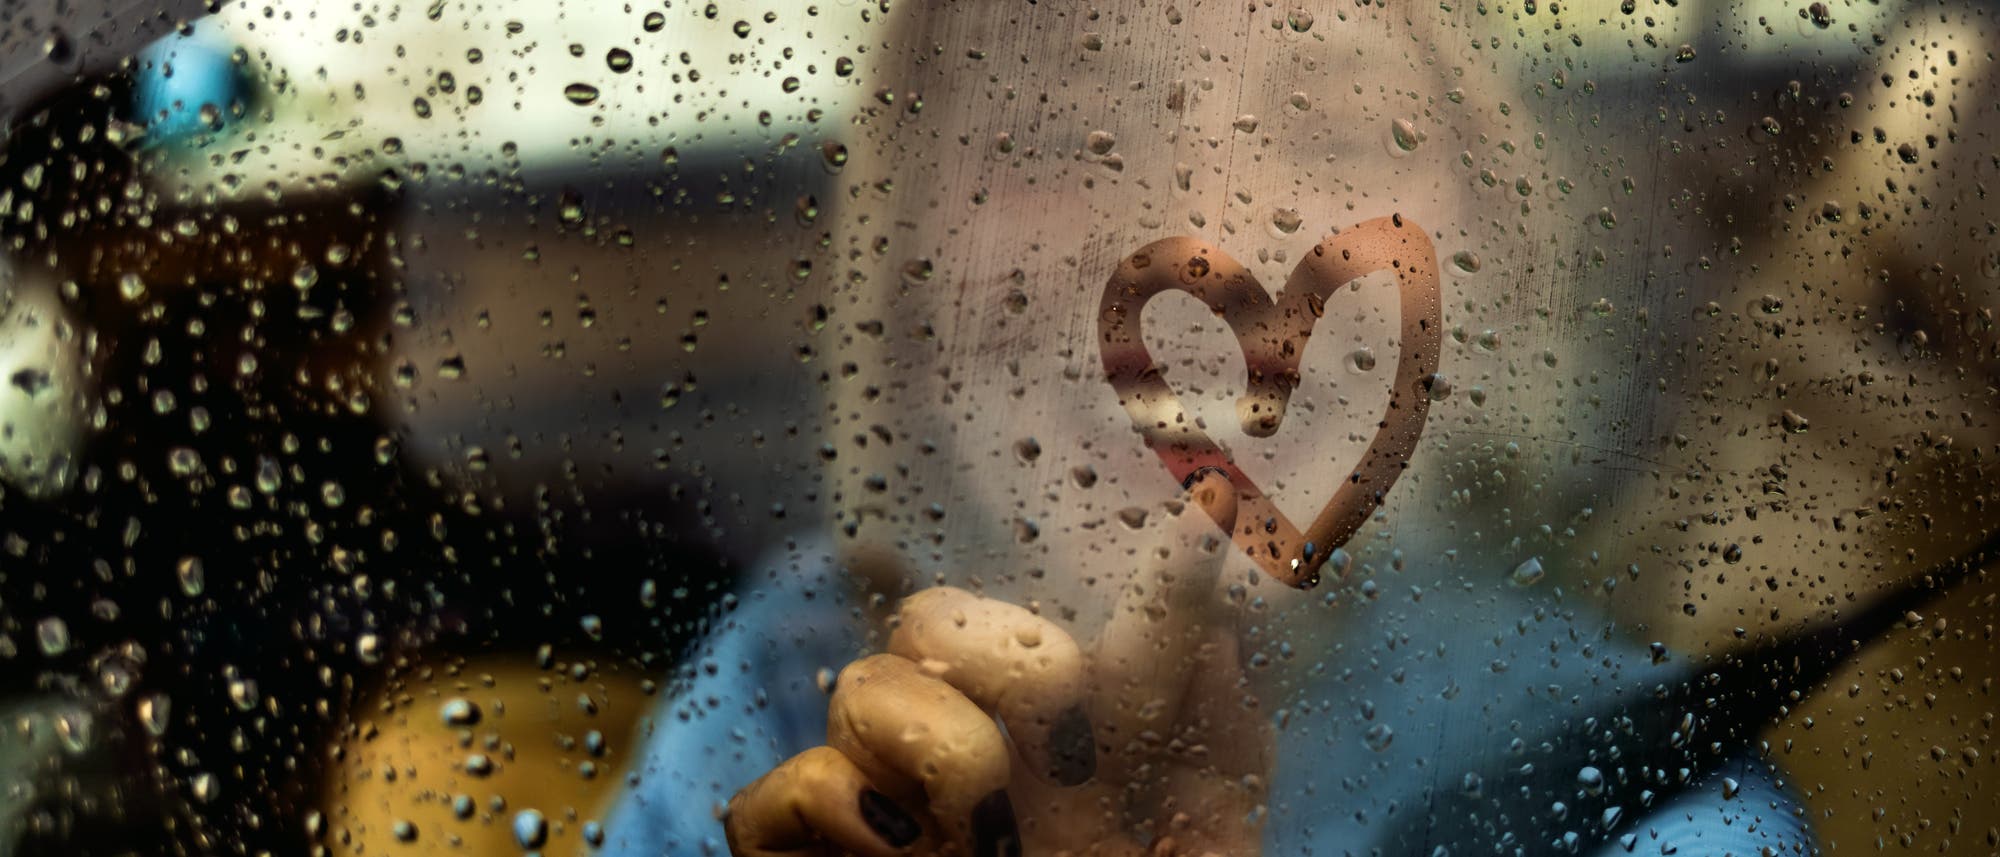 Herz, das mit dem Finger auf eine verregnete Autoscheibe gemalt wurde. Im Hintergrund ist verschwommen die Frau zu erkennen, die das Herz gemalt hat. 